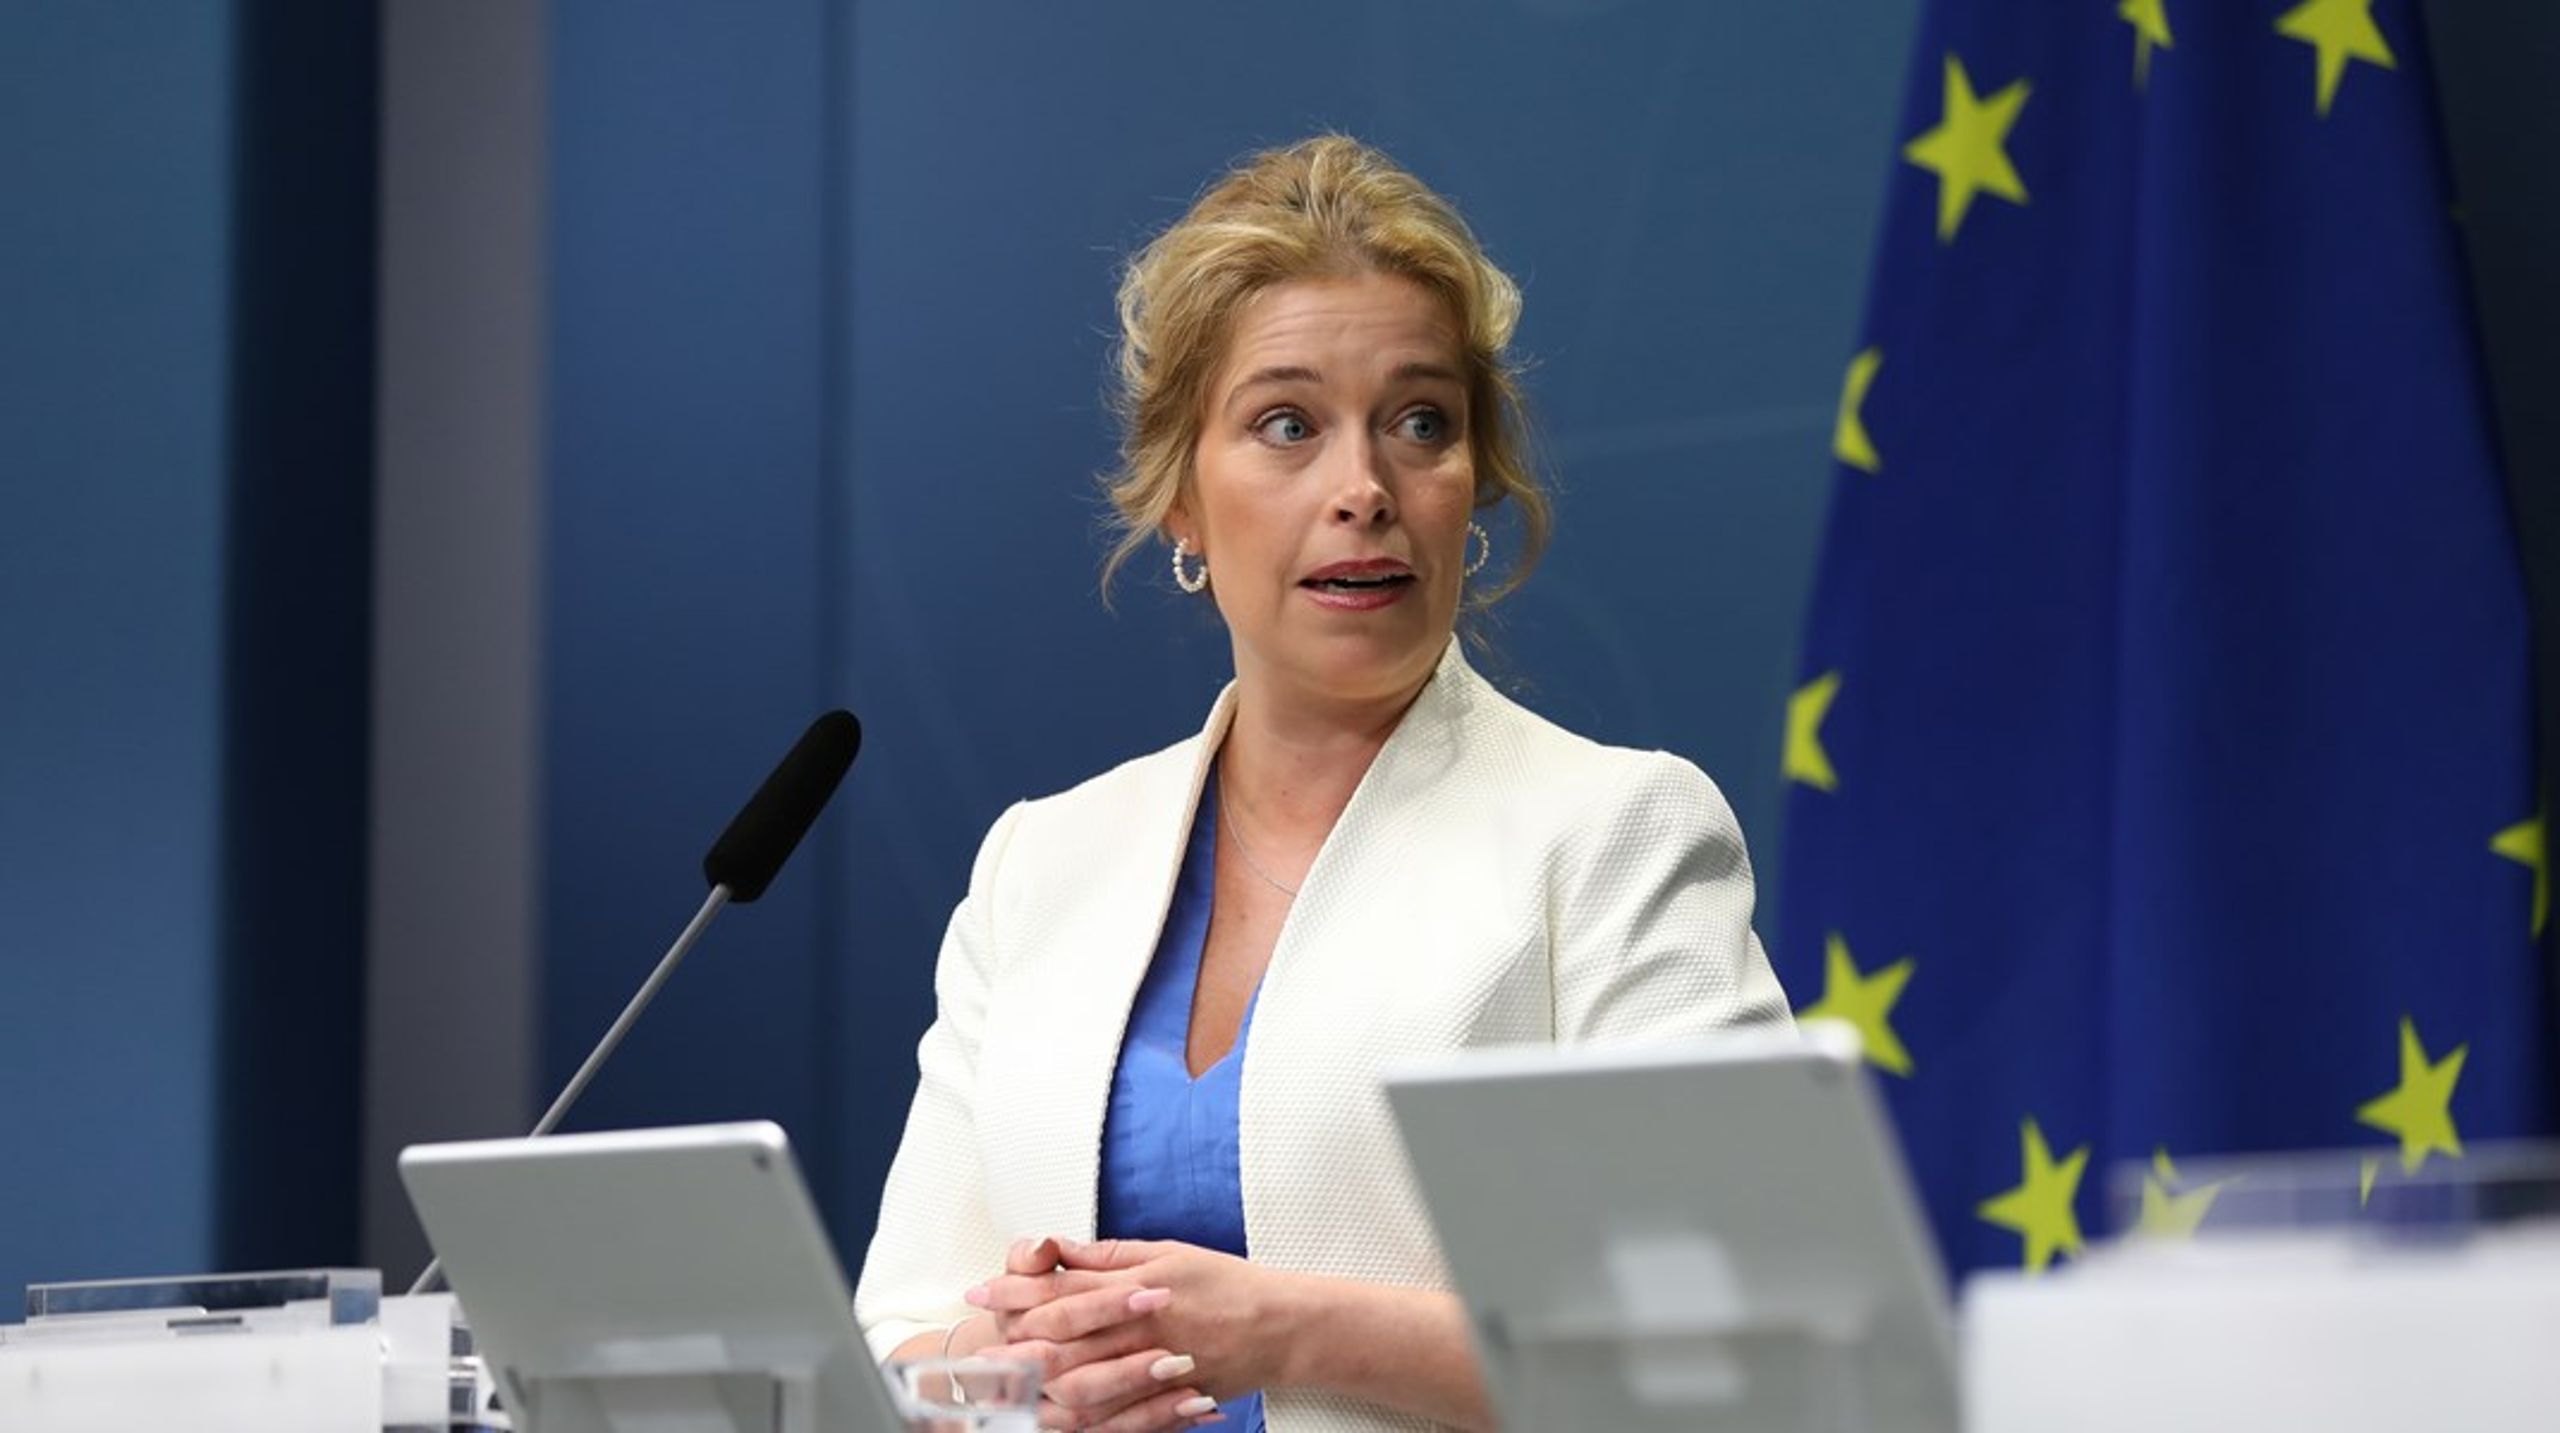 Klimat- och miljöminister Annika Strandhäll (S) åker inte till FN:s havskonferens i Lissabon. Istället är det statssekreterare Anders Grönvall som avlöser biståndsminister Matilda Ernkrans (S) som delegationsledare.